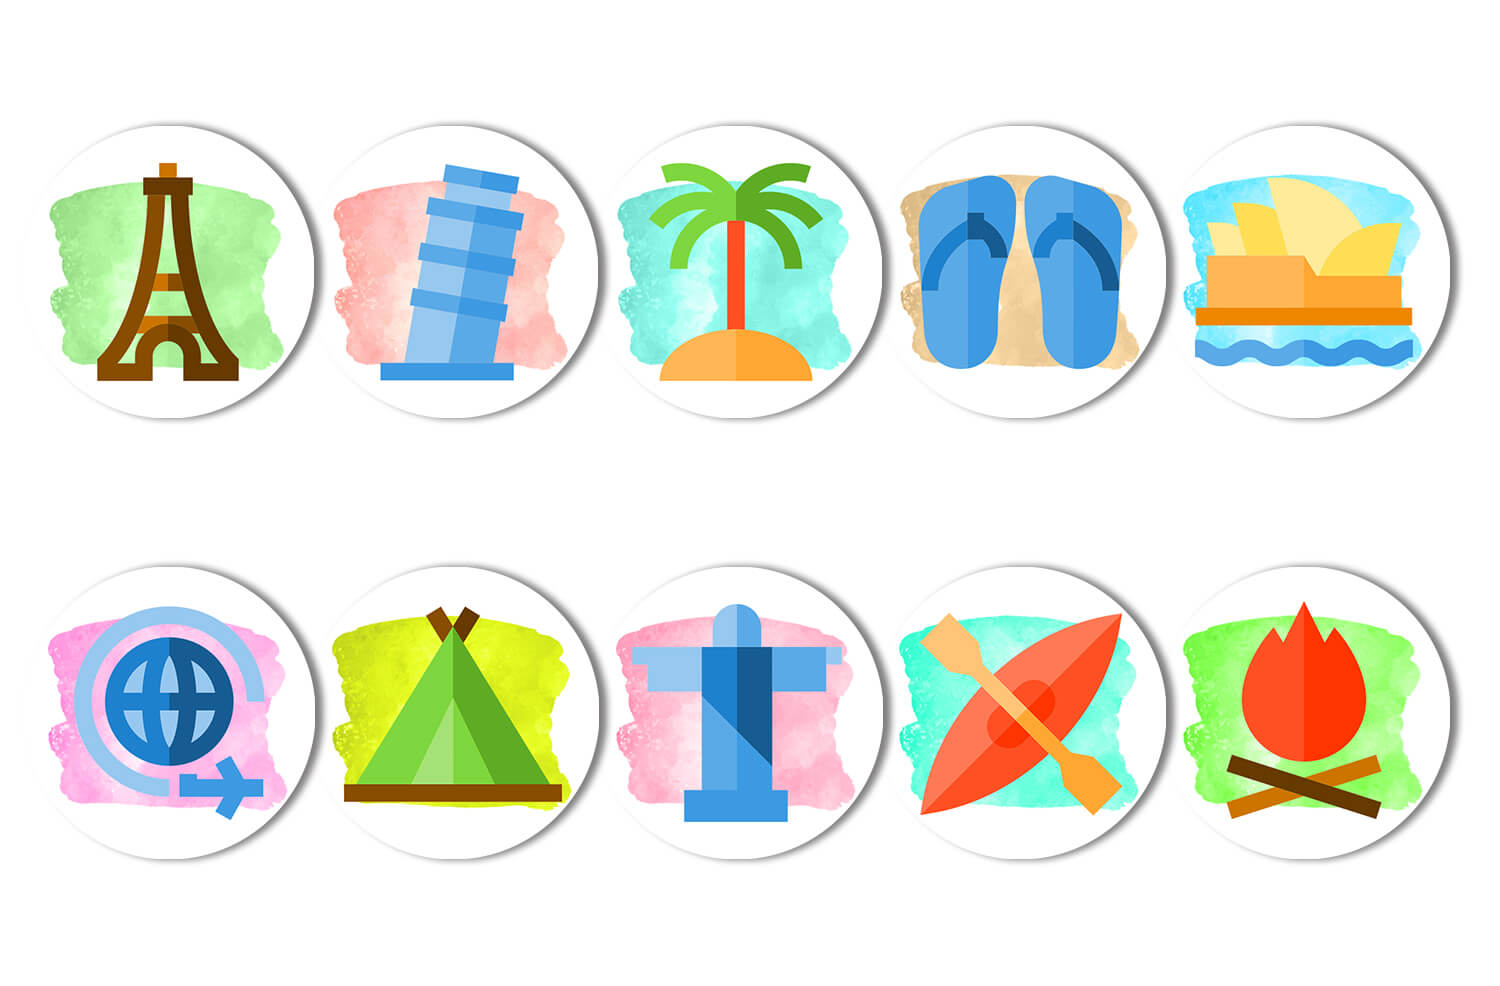 Разноцветные иконки для актуальных сторис в Инстаграм на тему путешествий.